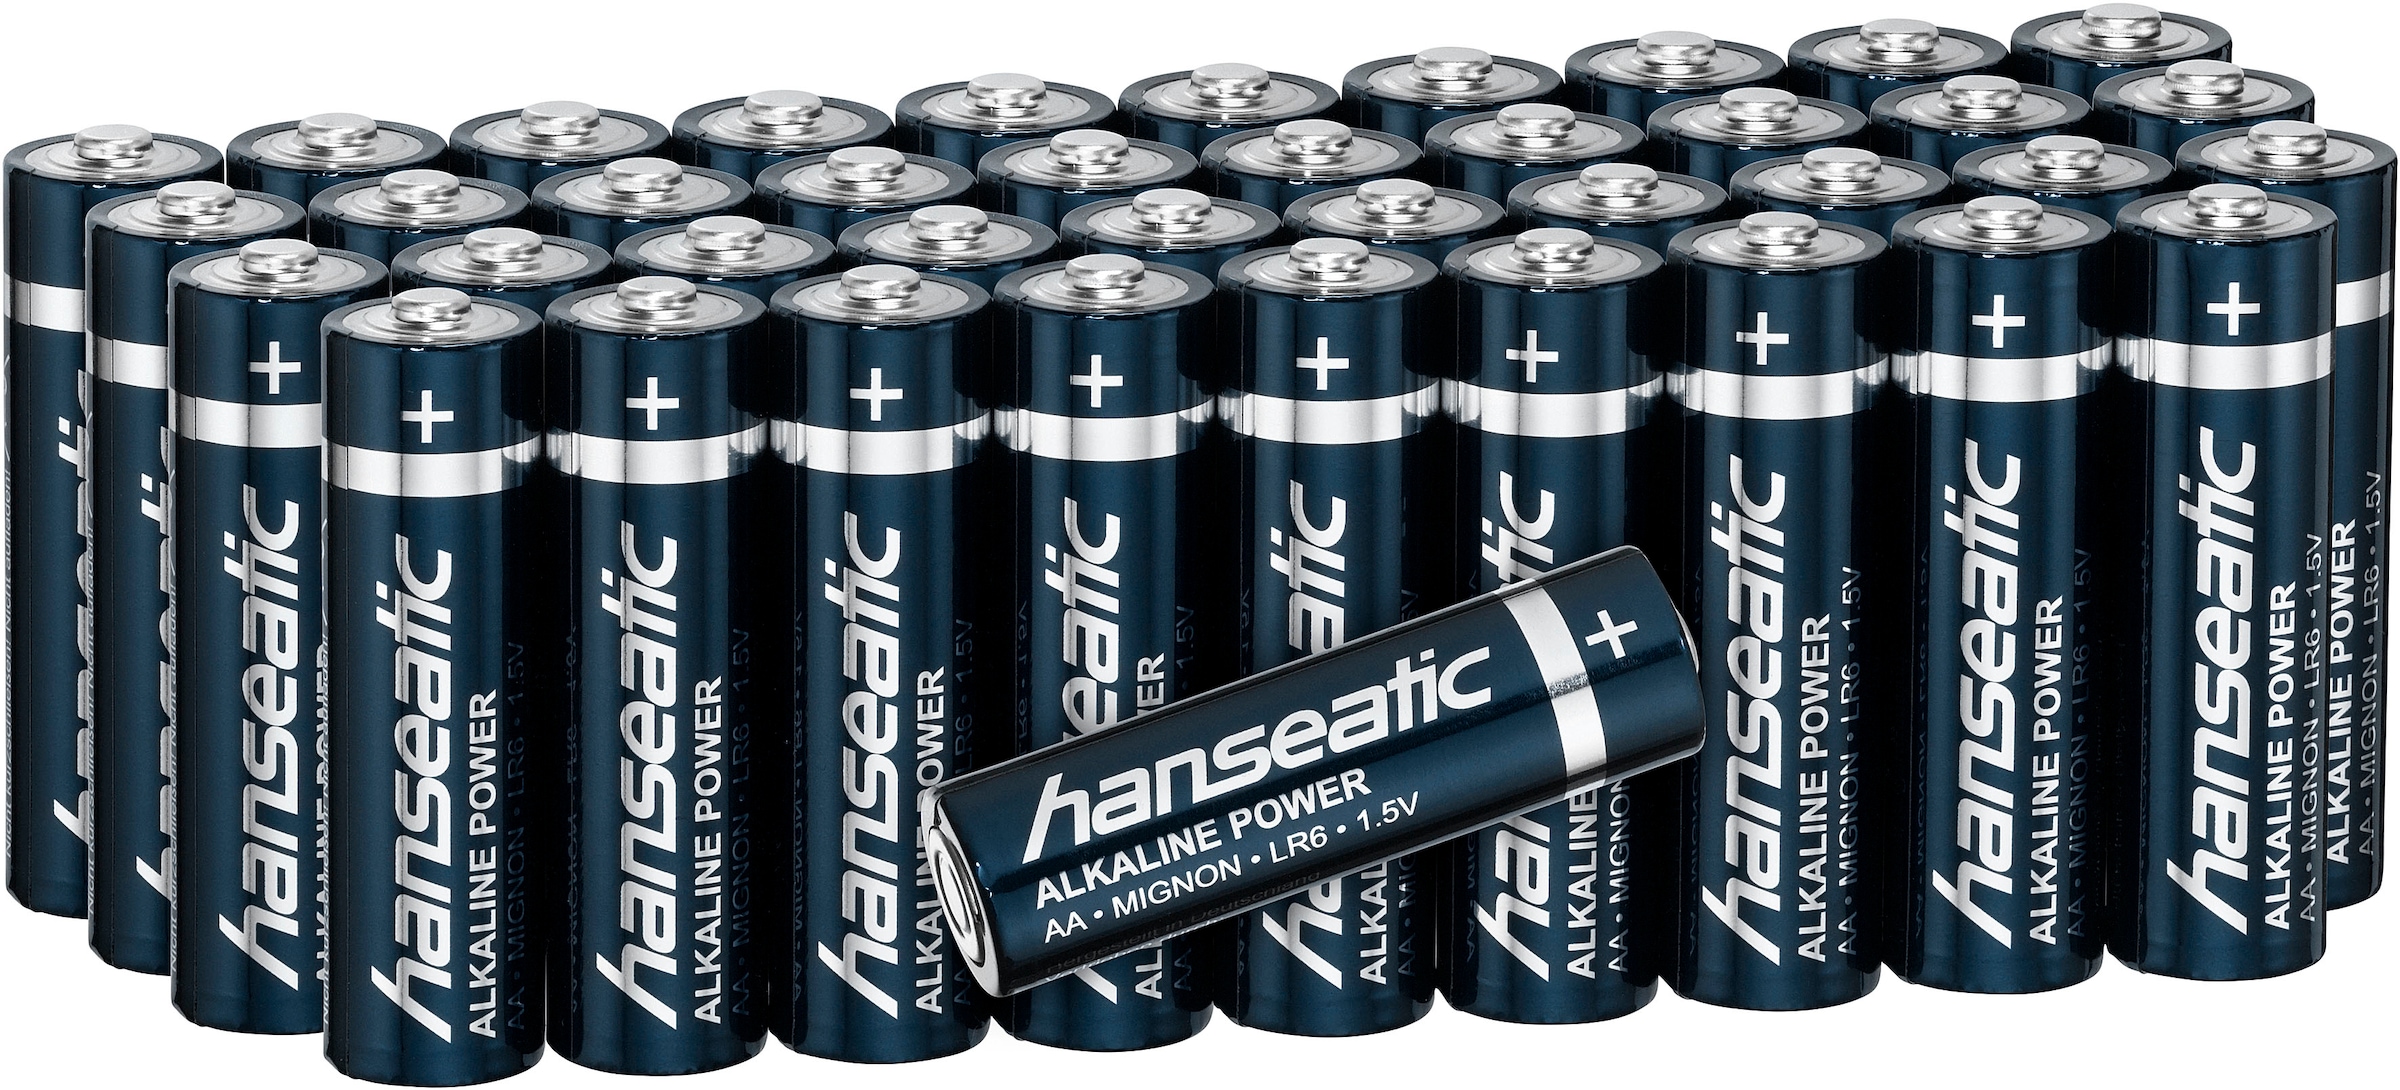 Hanseatic Batterie »40er Pack Alkaline Power, AA Mignon«, LR06, (Packung, 40 St.), bis zu 5 Jahren Lagerfähigkeit